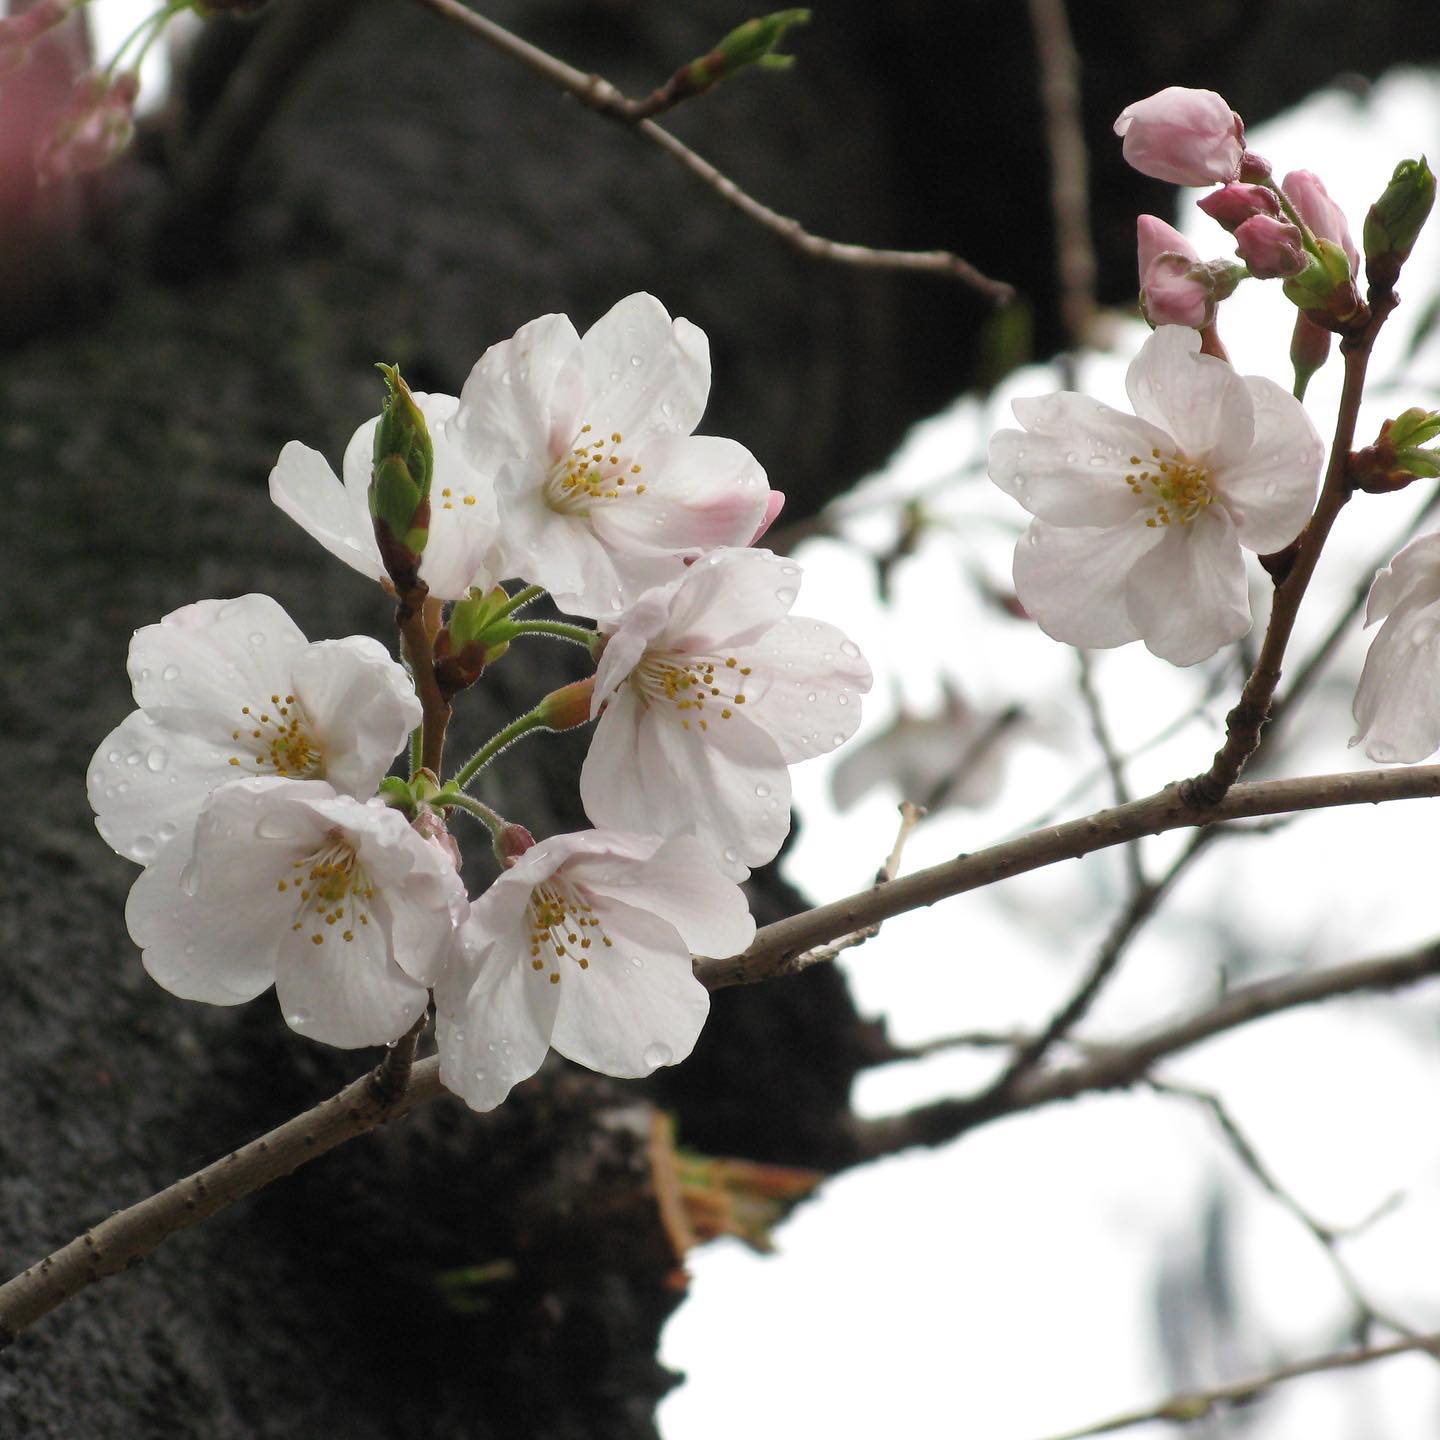 古いデジカメ引っ張り出して、桜の撮影してみた。なかなかうまくピントが合わないけど、さすがは往年の高級機種。それなりに、いい描写しますねぇ。#愛媛県 #松山市 #桜 #さくら #サクラ #雨上がり #オールドコンデジ #canon #powershotg7